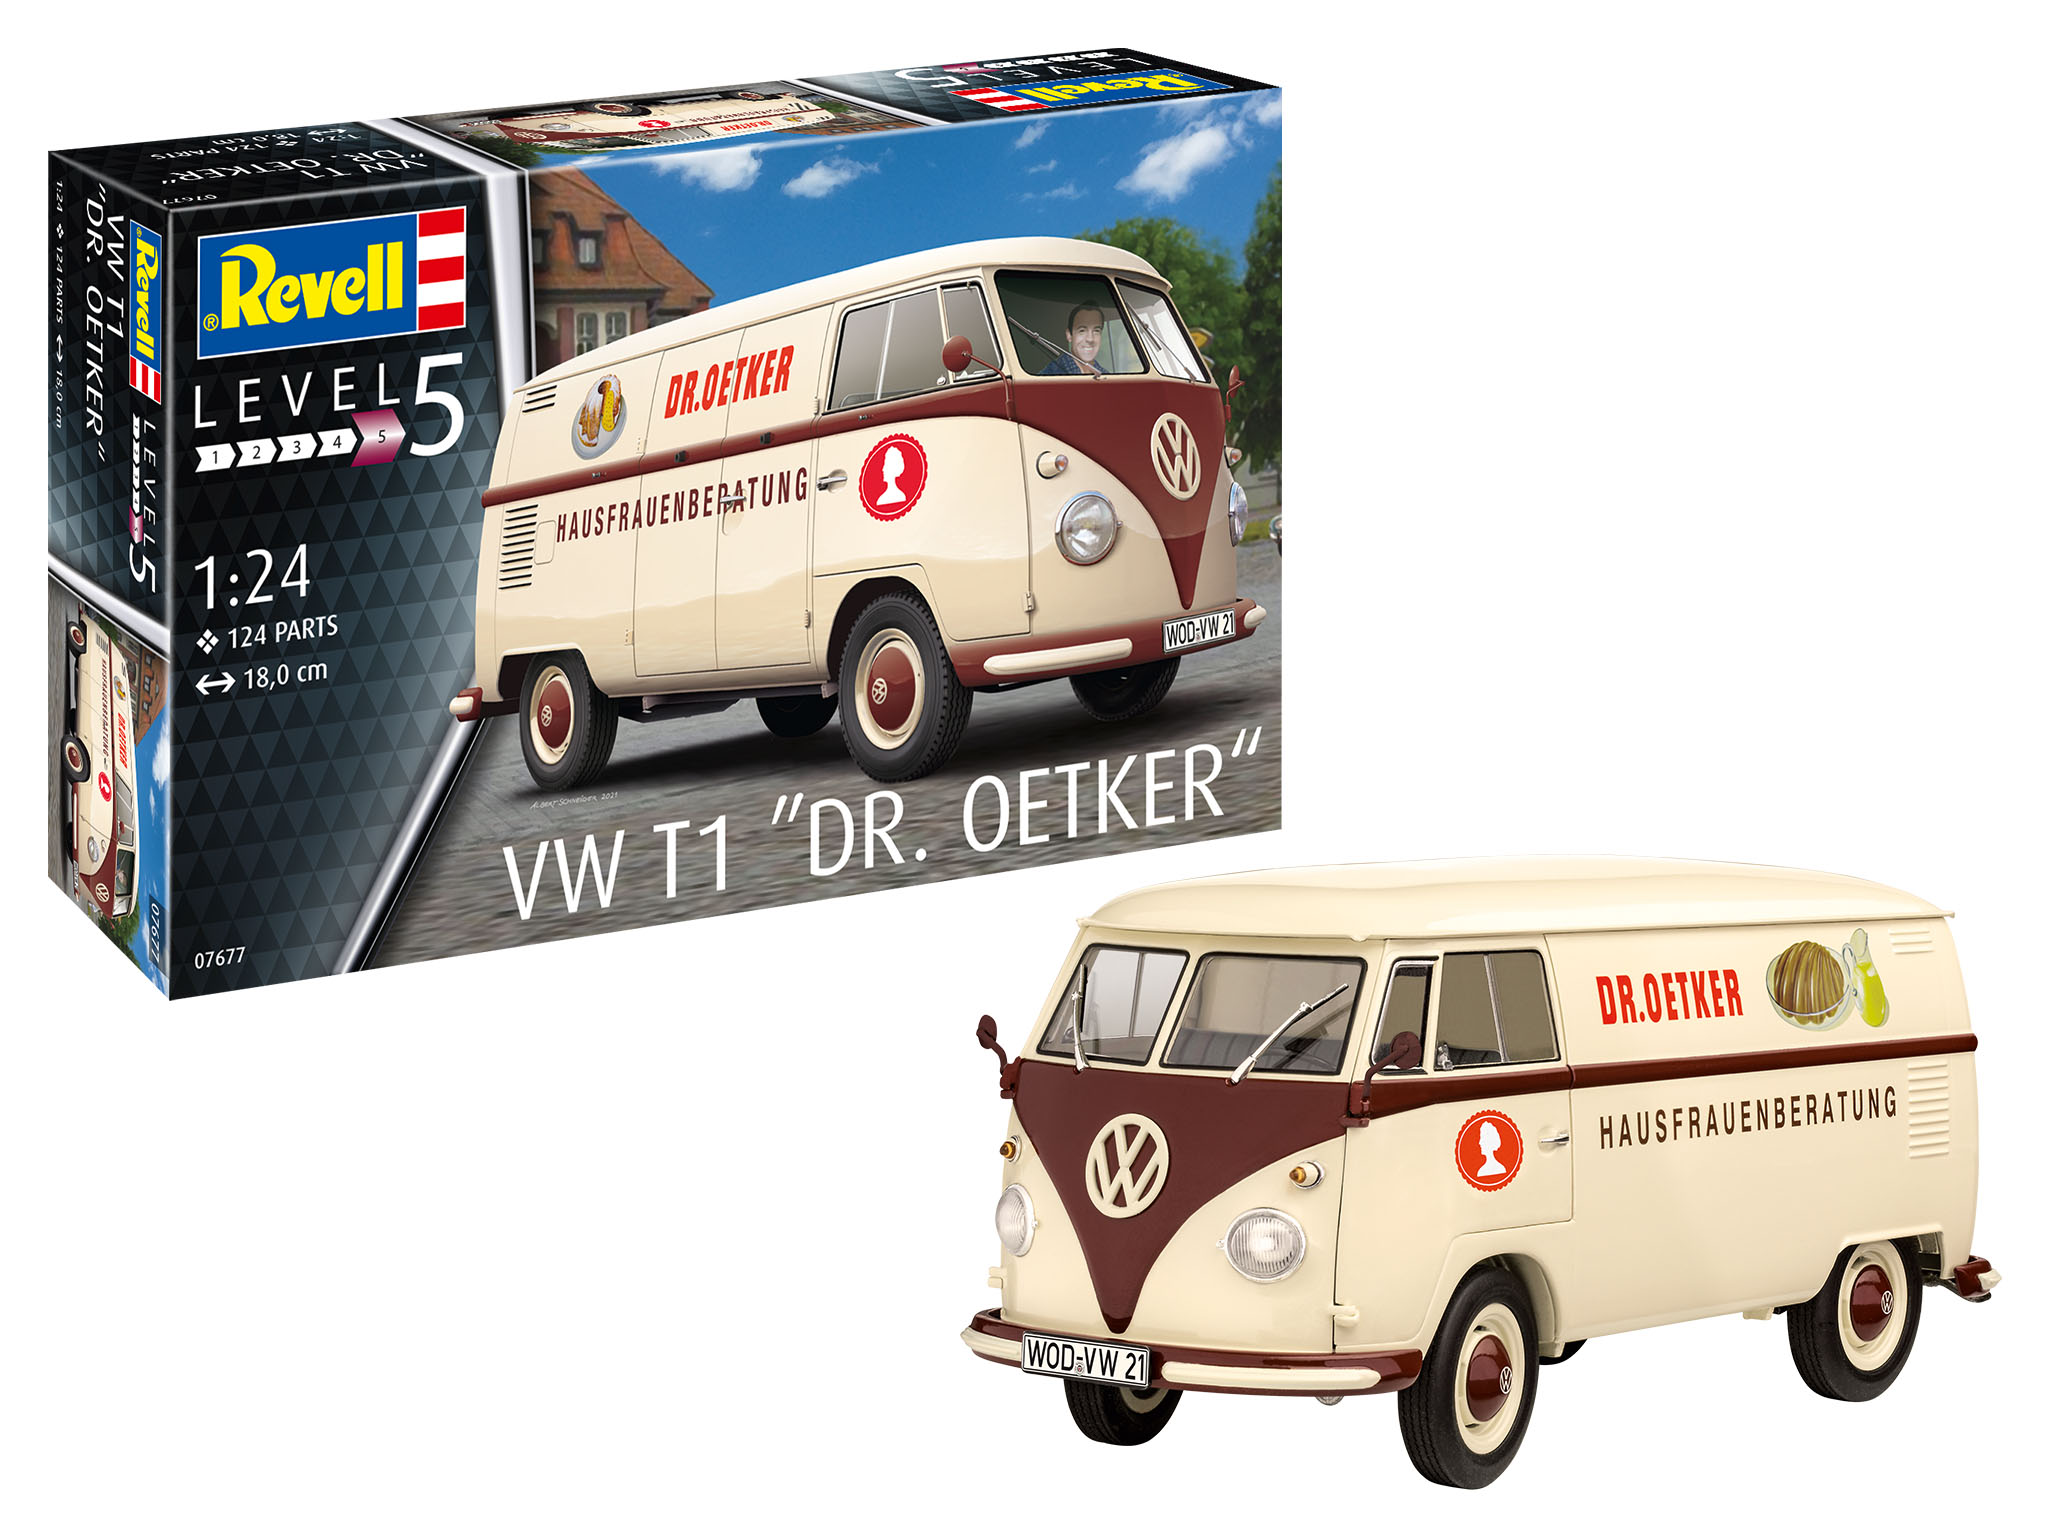 revell-07677-Volkswagen-T1-Lieferwagen-Dr-Oetker-Hausfrauenberatung-Lebensmittelhersteller